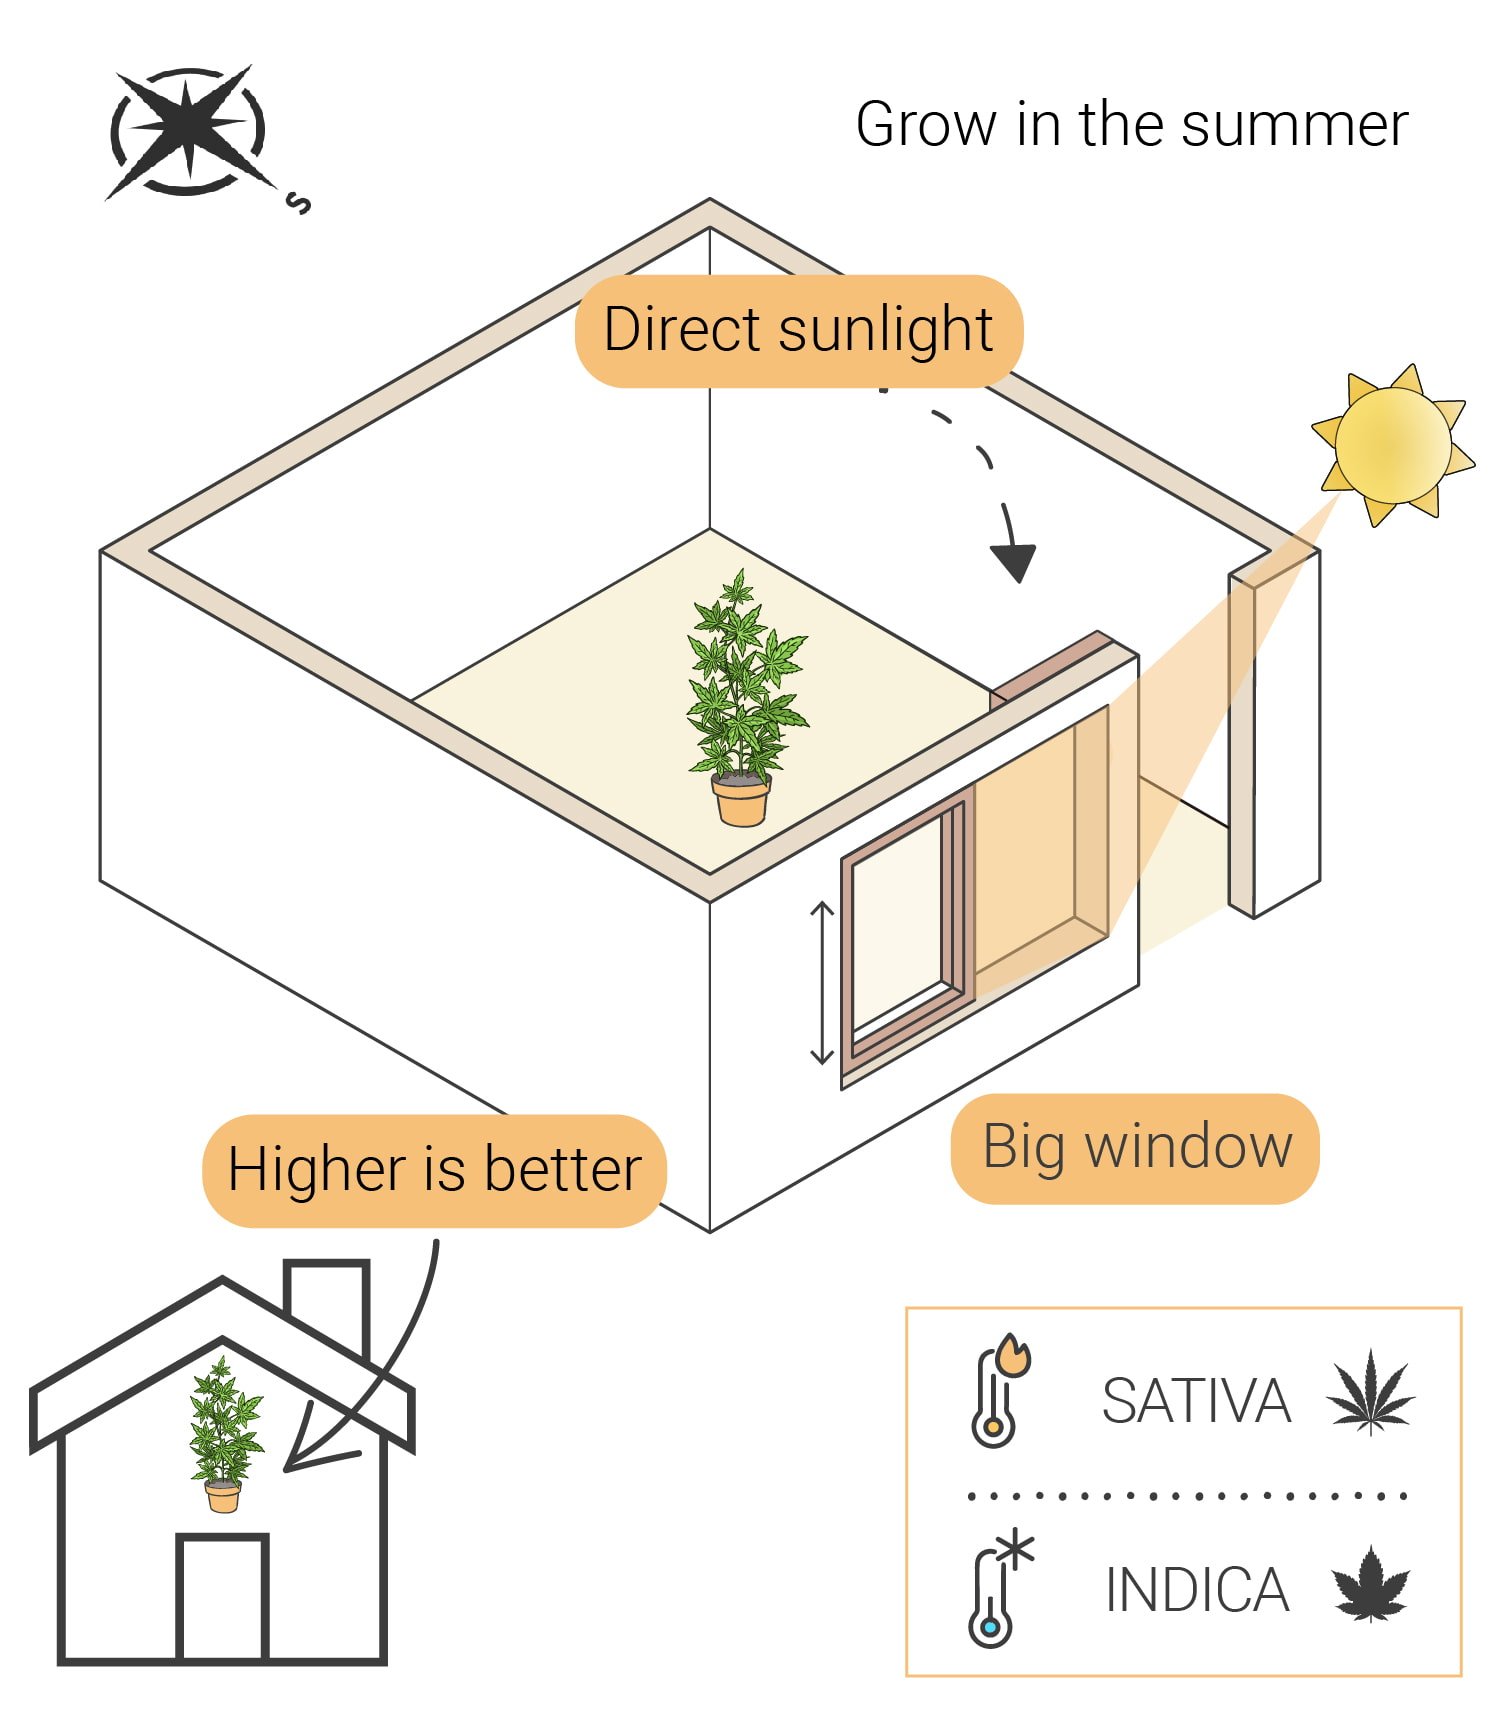 Wie man Cannabis indoor ohne Lampen anbaut